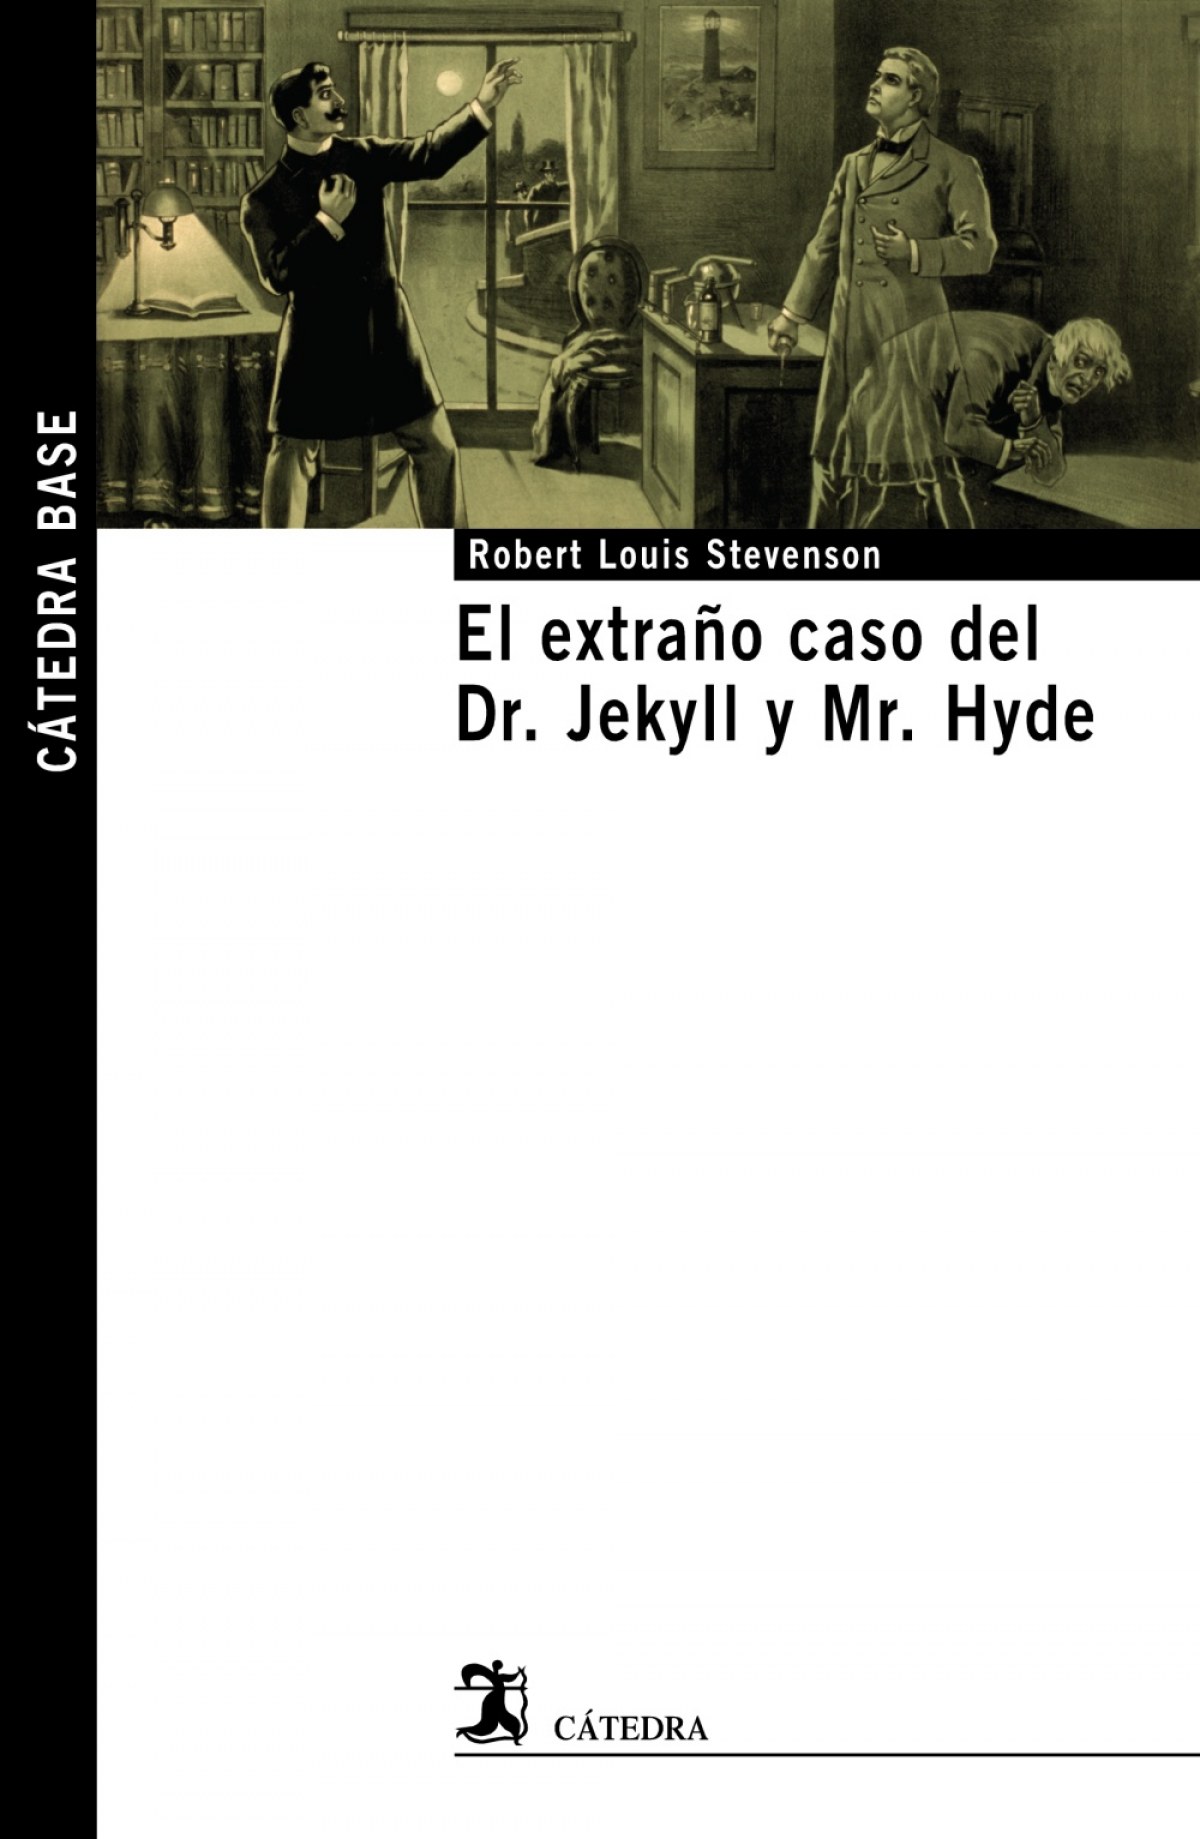 El extraño caso del Dr. Jekyll y Mr. Hyde - Stevenson, Robert Louis